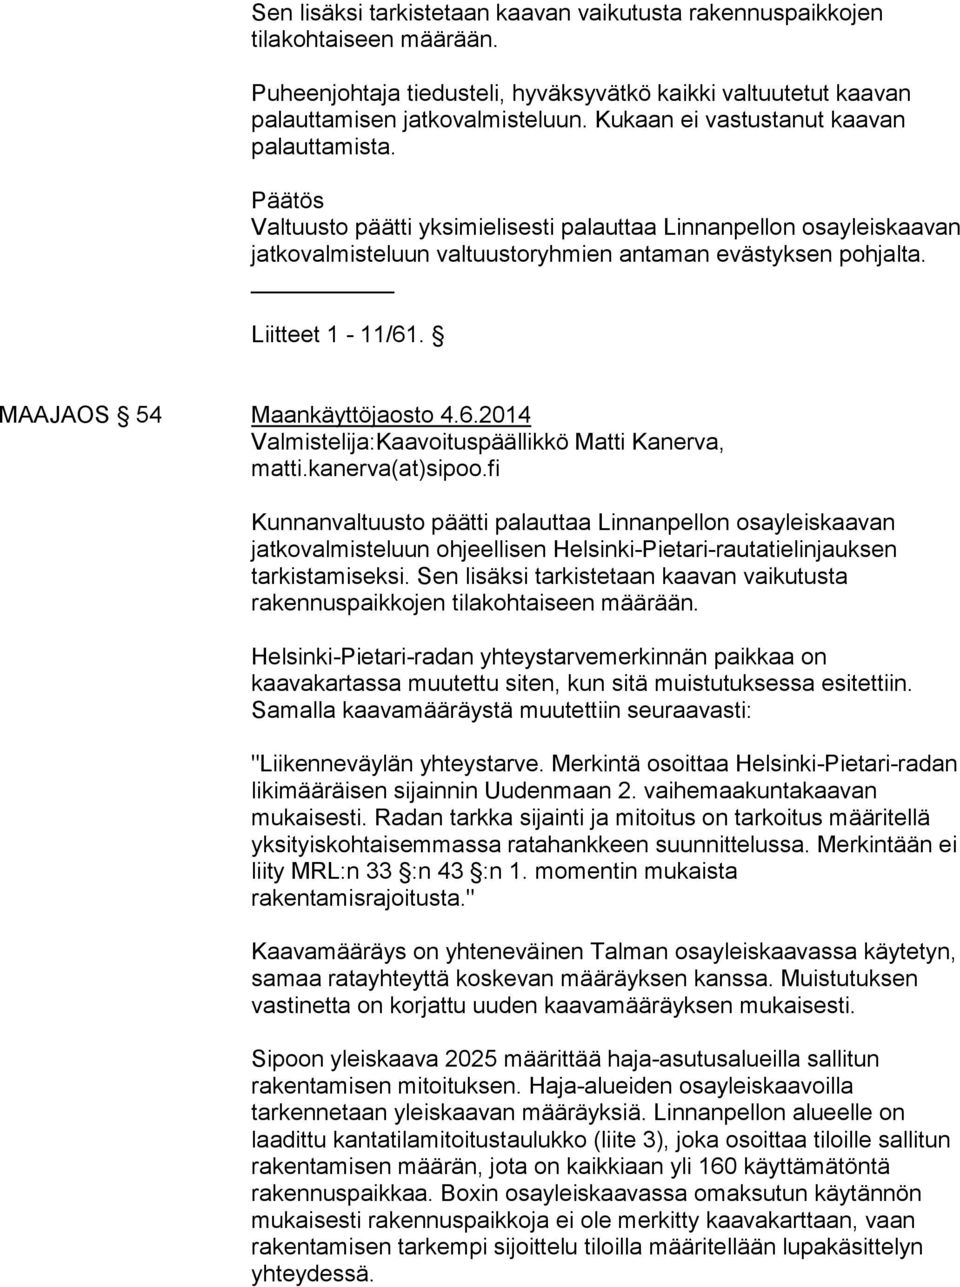 MAAJAOS 54 Maankäyttöjaosto 4.6.2014 Valmistelija:Kaavoituspäällikkö Matti Kanerva, matti.kanerva(at)sipoo.